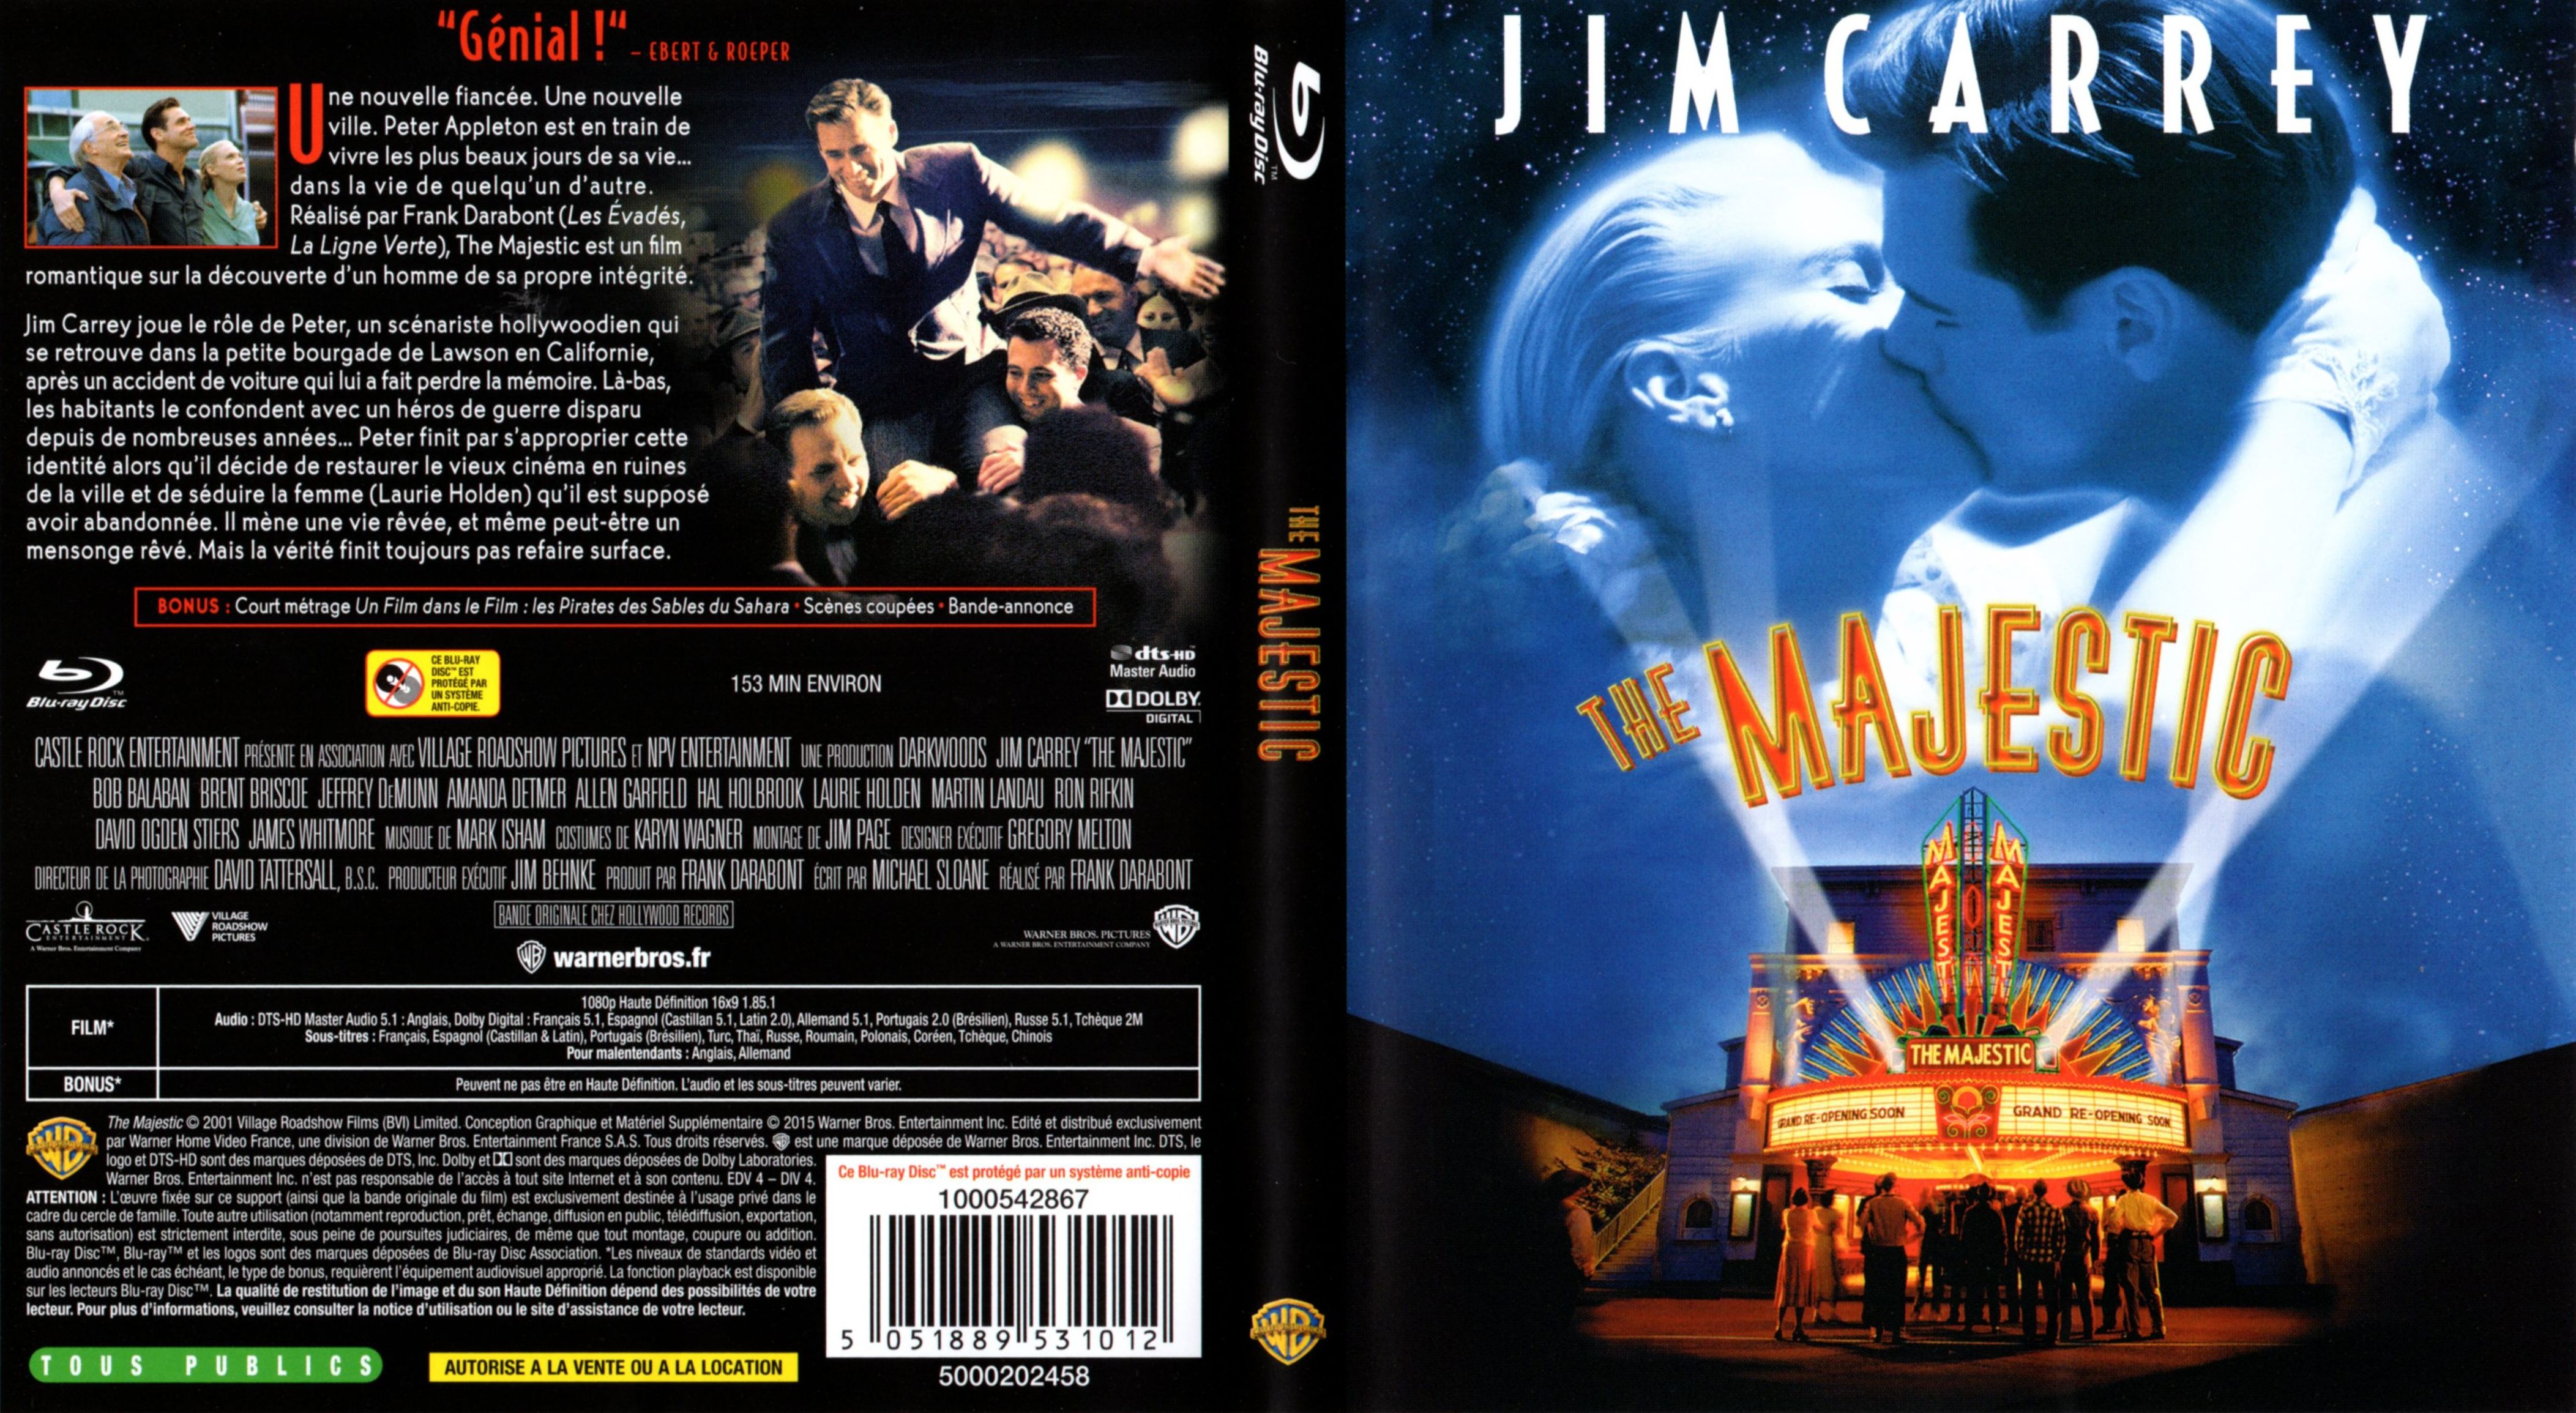 Blu ray кинотеатры. Мажестик (2001). Джим Керри Маджестик Постер.